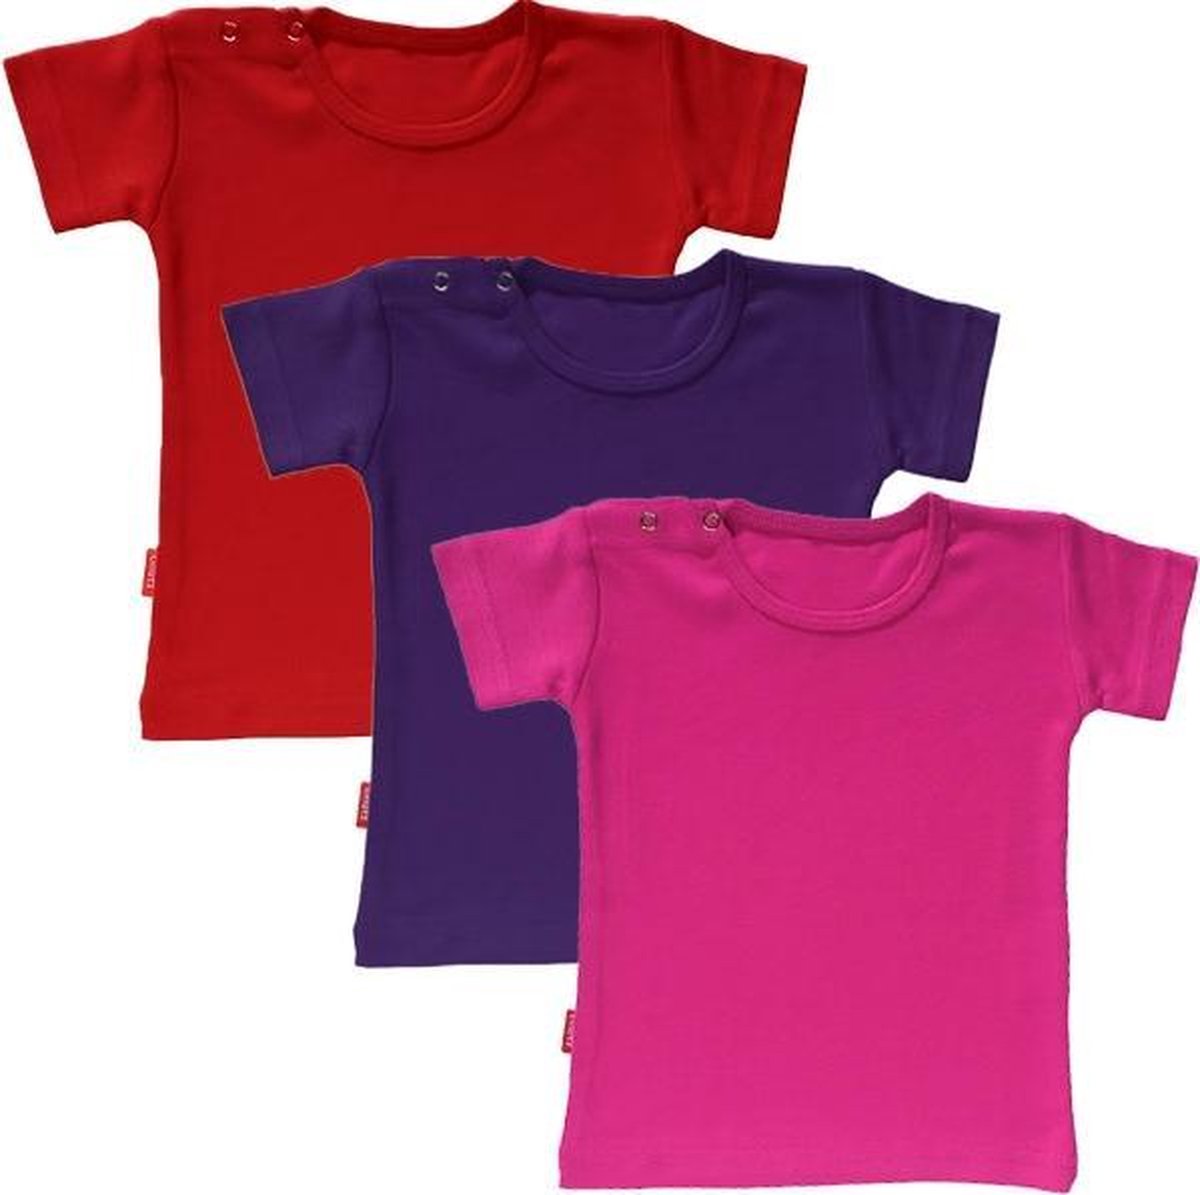 BNUTZ Set van 3 T-shirts met korte mouwen - 6-12 maand (Fuchsia, Paars, Rood)